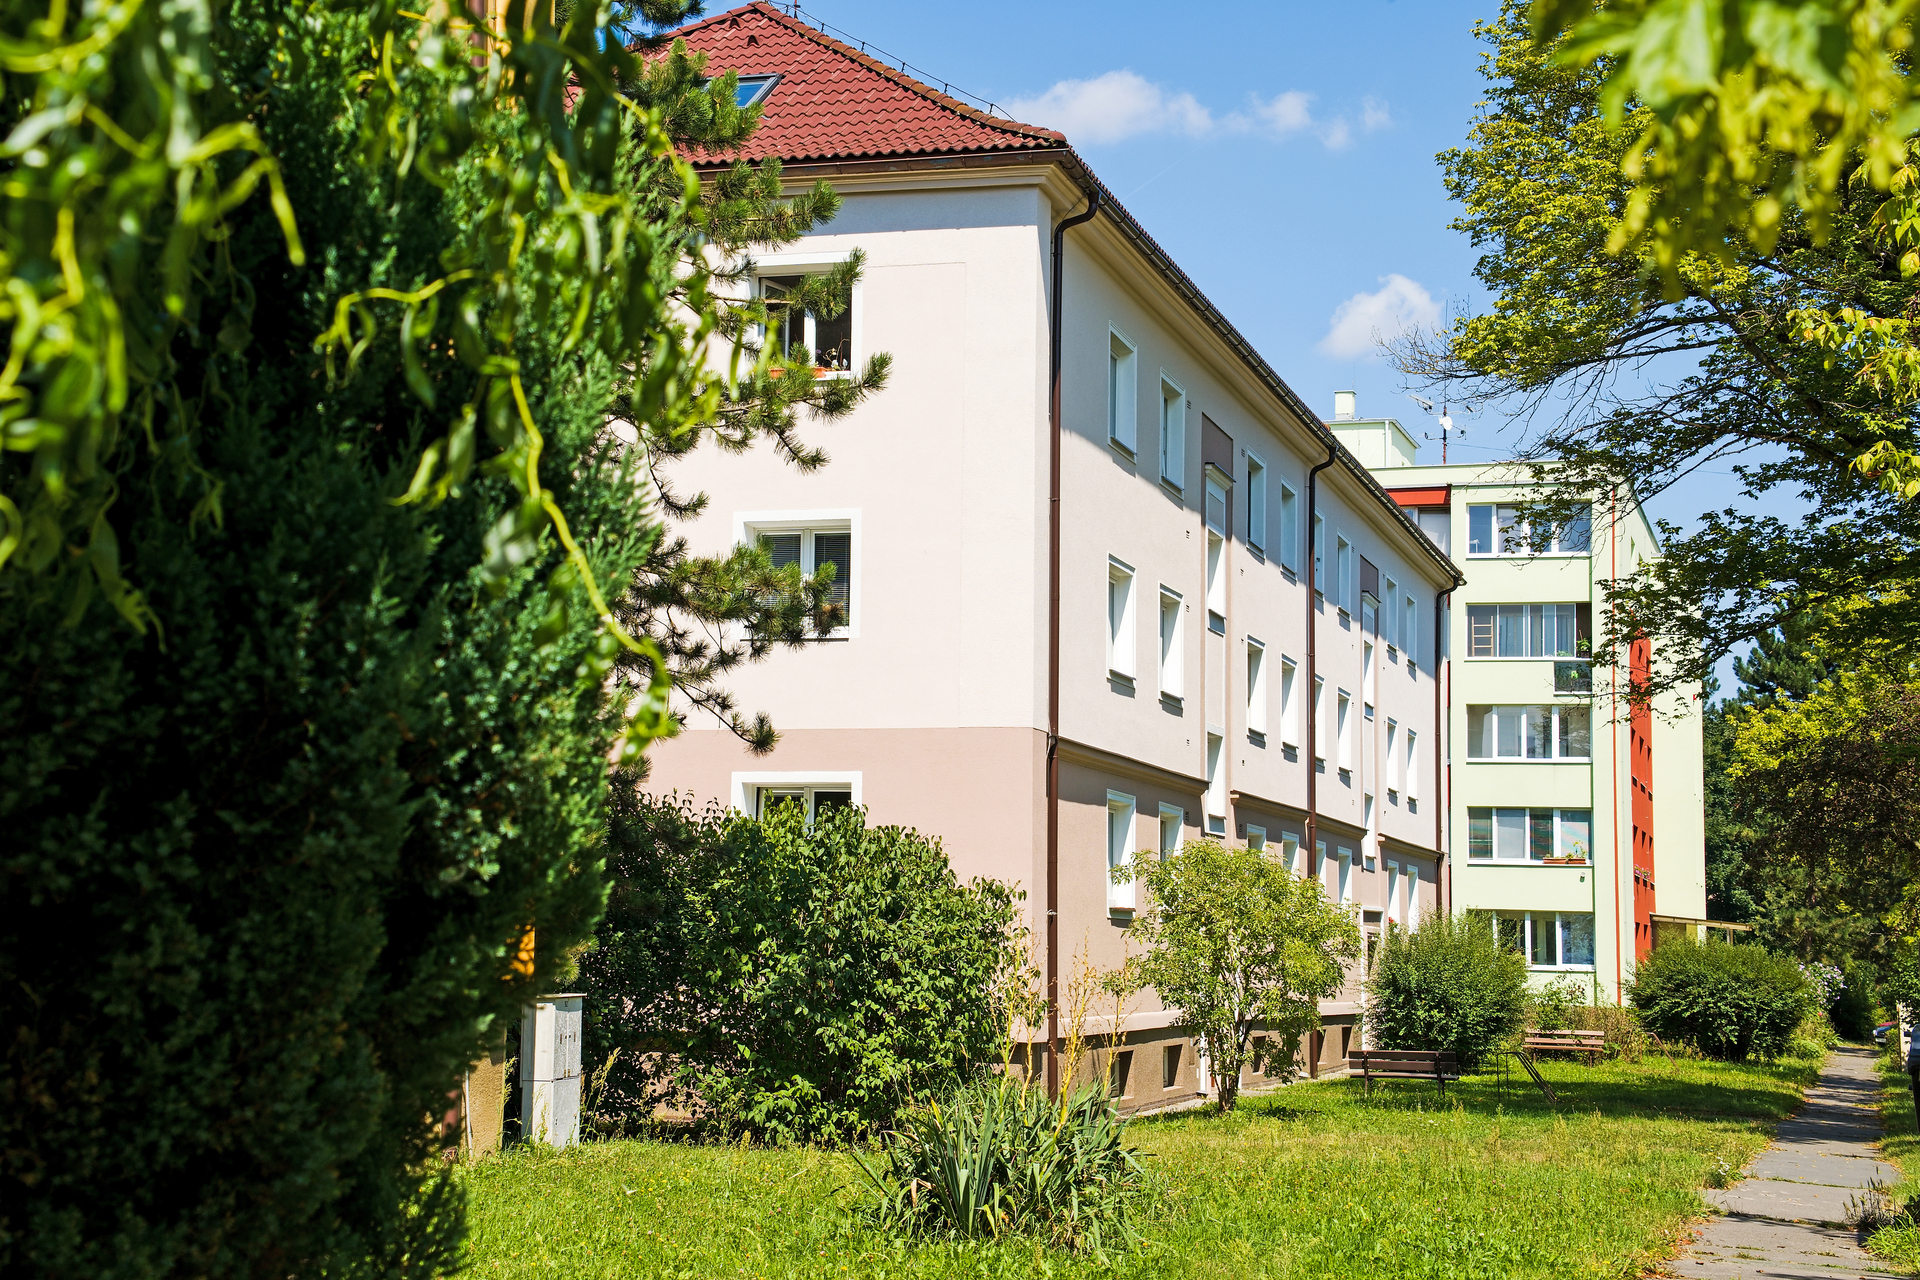 Napsali o nás: Startovací byty jsou často jediná šance pro mladé, Pardubice jich přidají 25